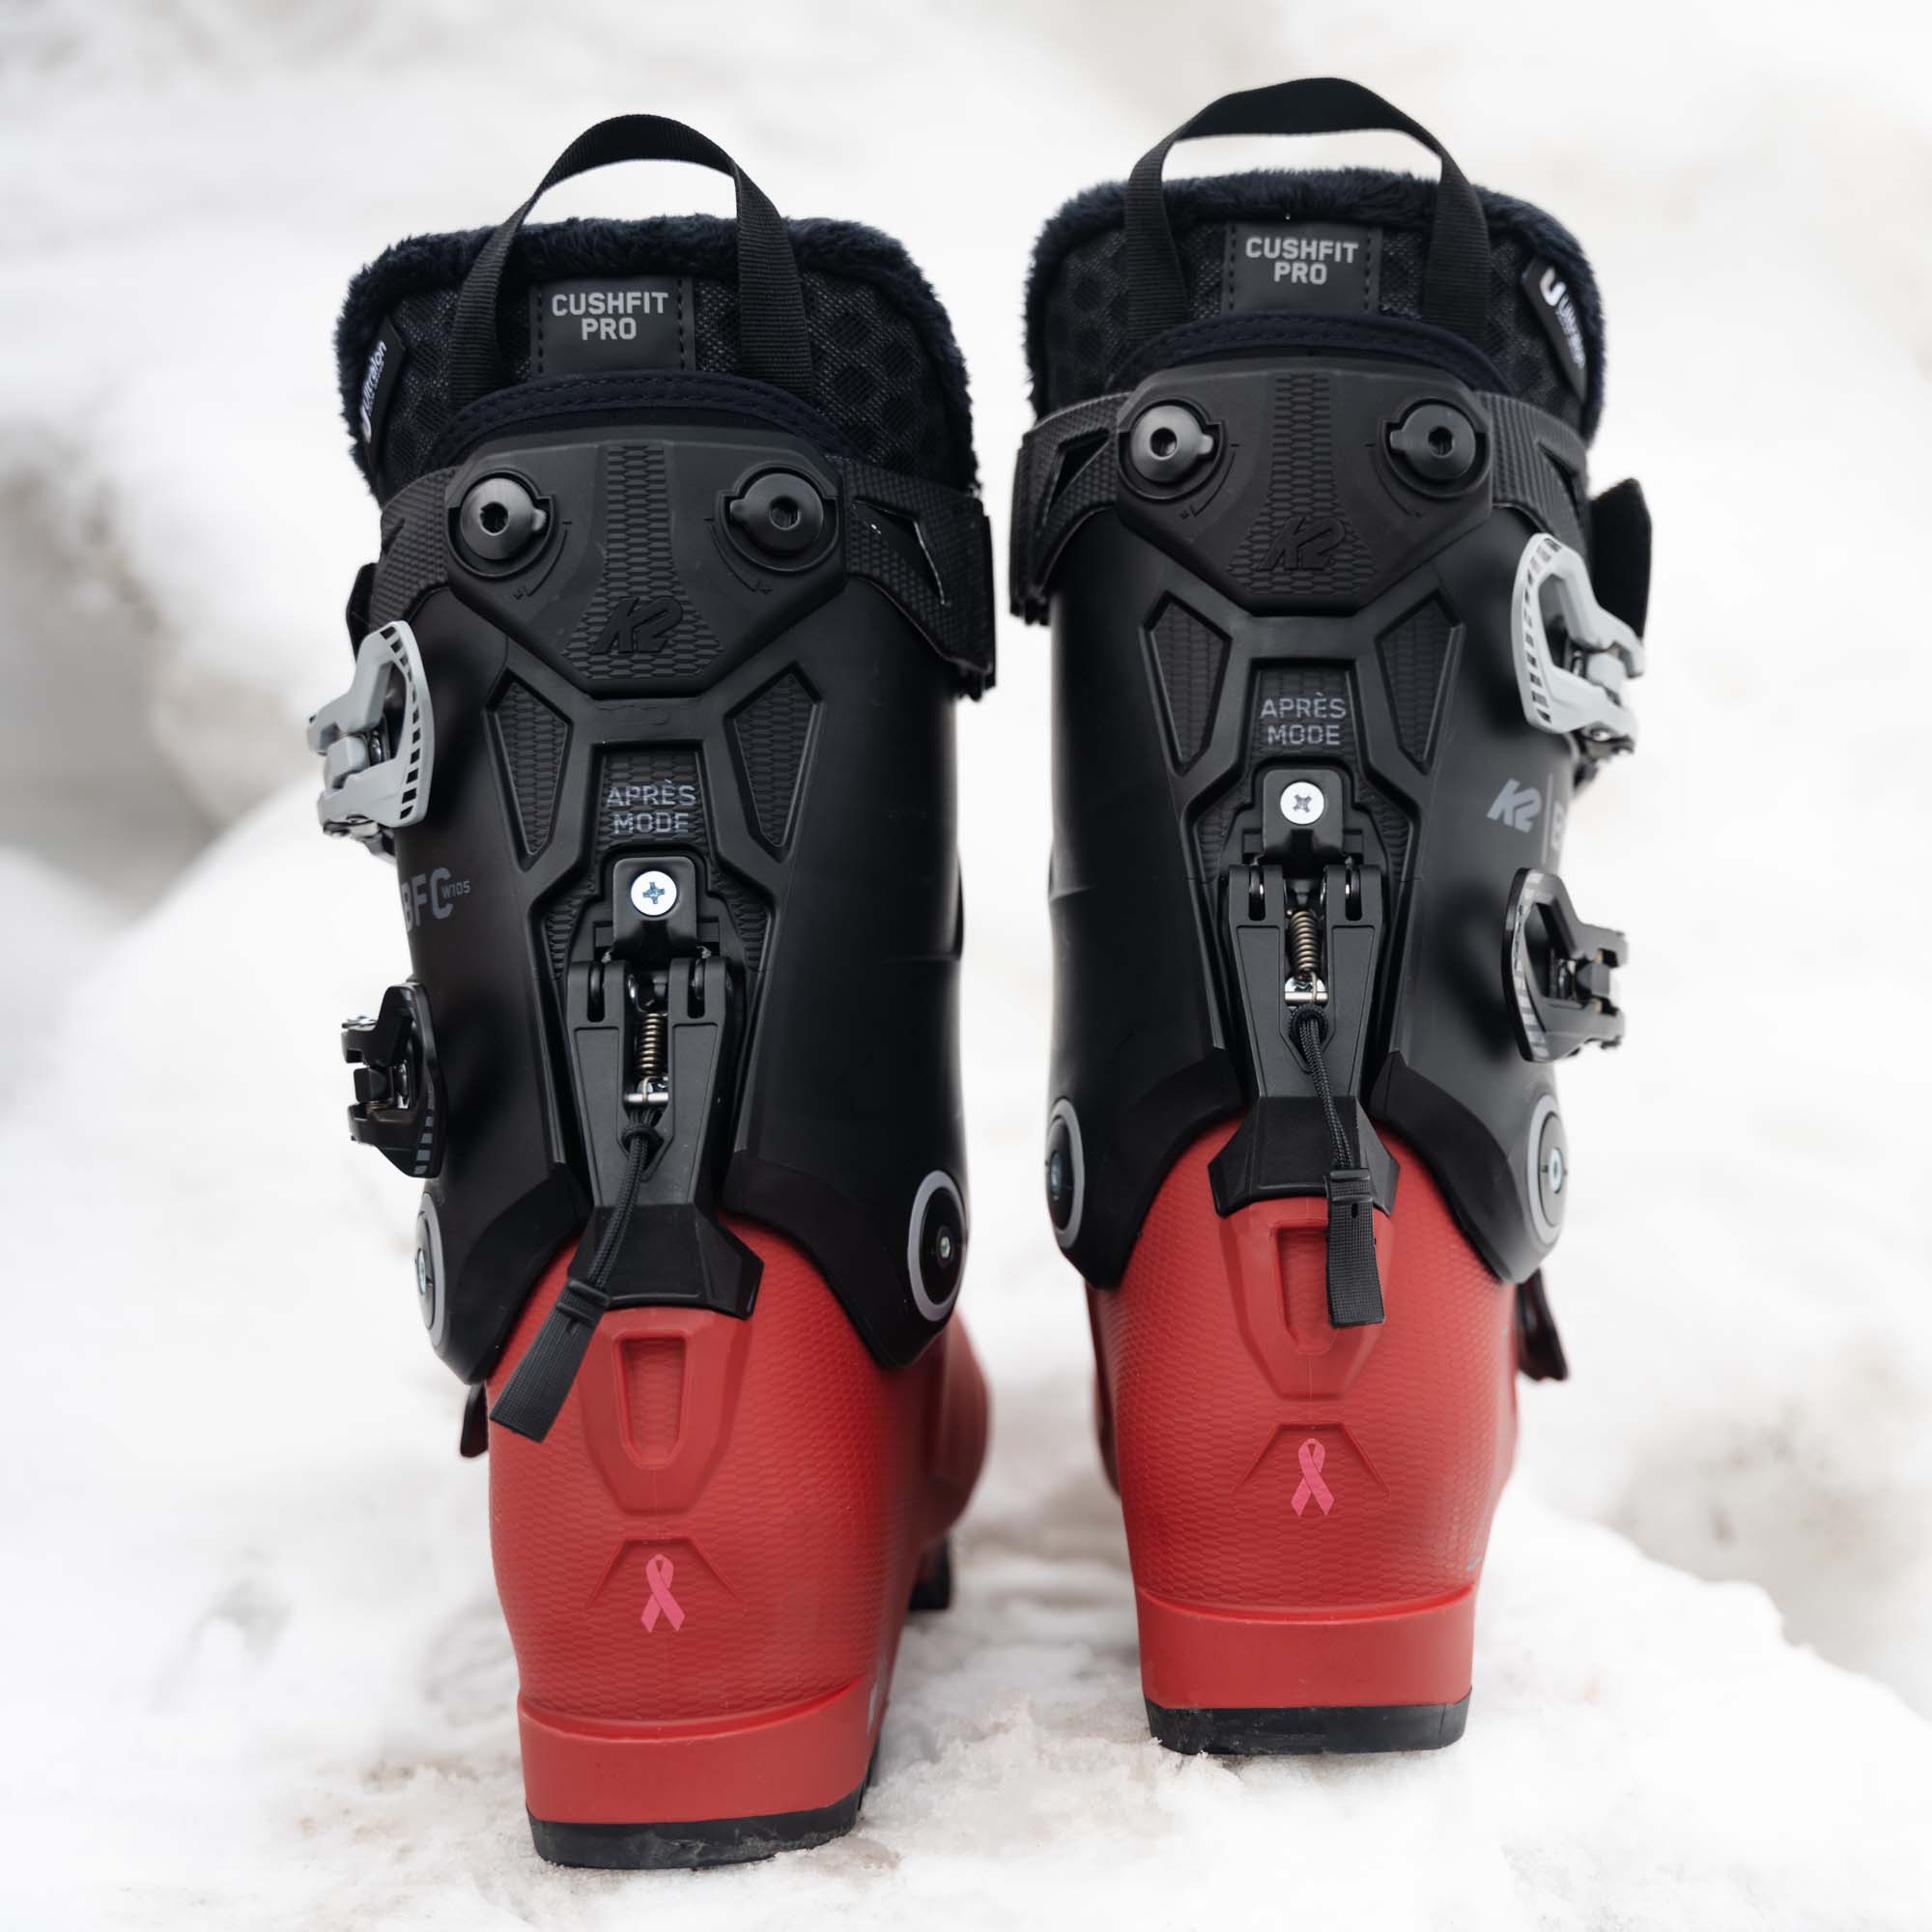 K2 BFC W 105 Grip Walk Women's Ski Boots